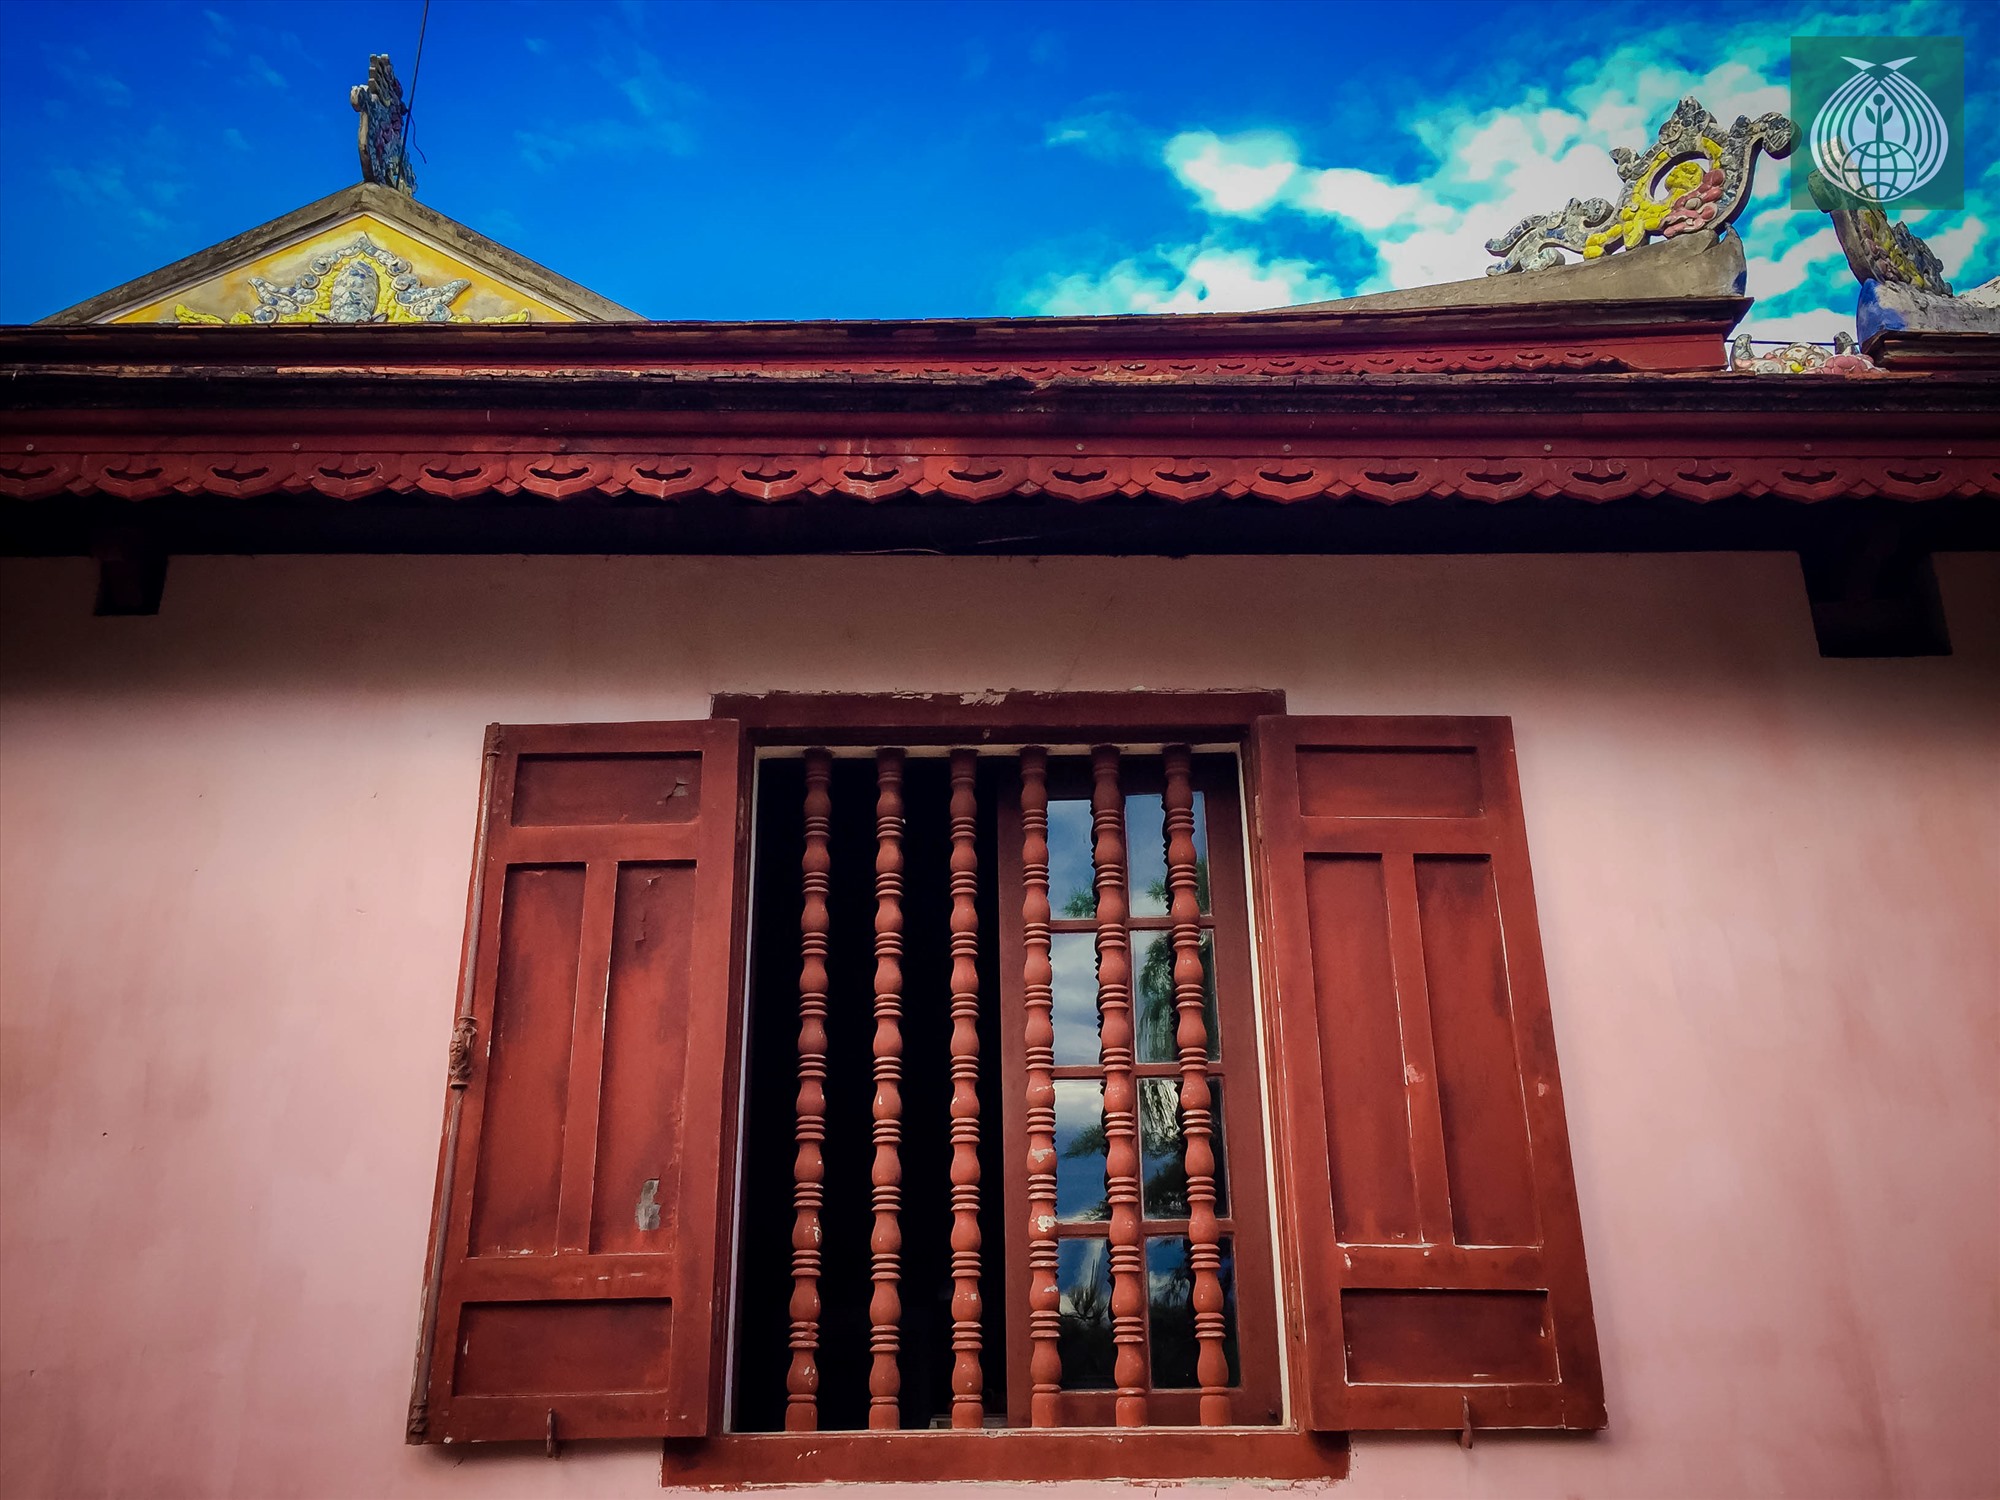 Ô cửa sổ bằng gỗ với thiết kế mang đậm dấu ấn lịch sử.